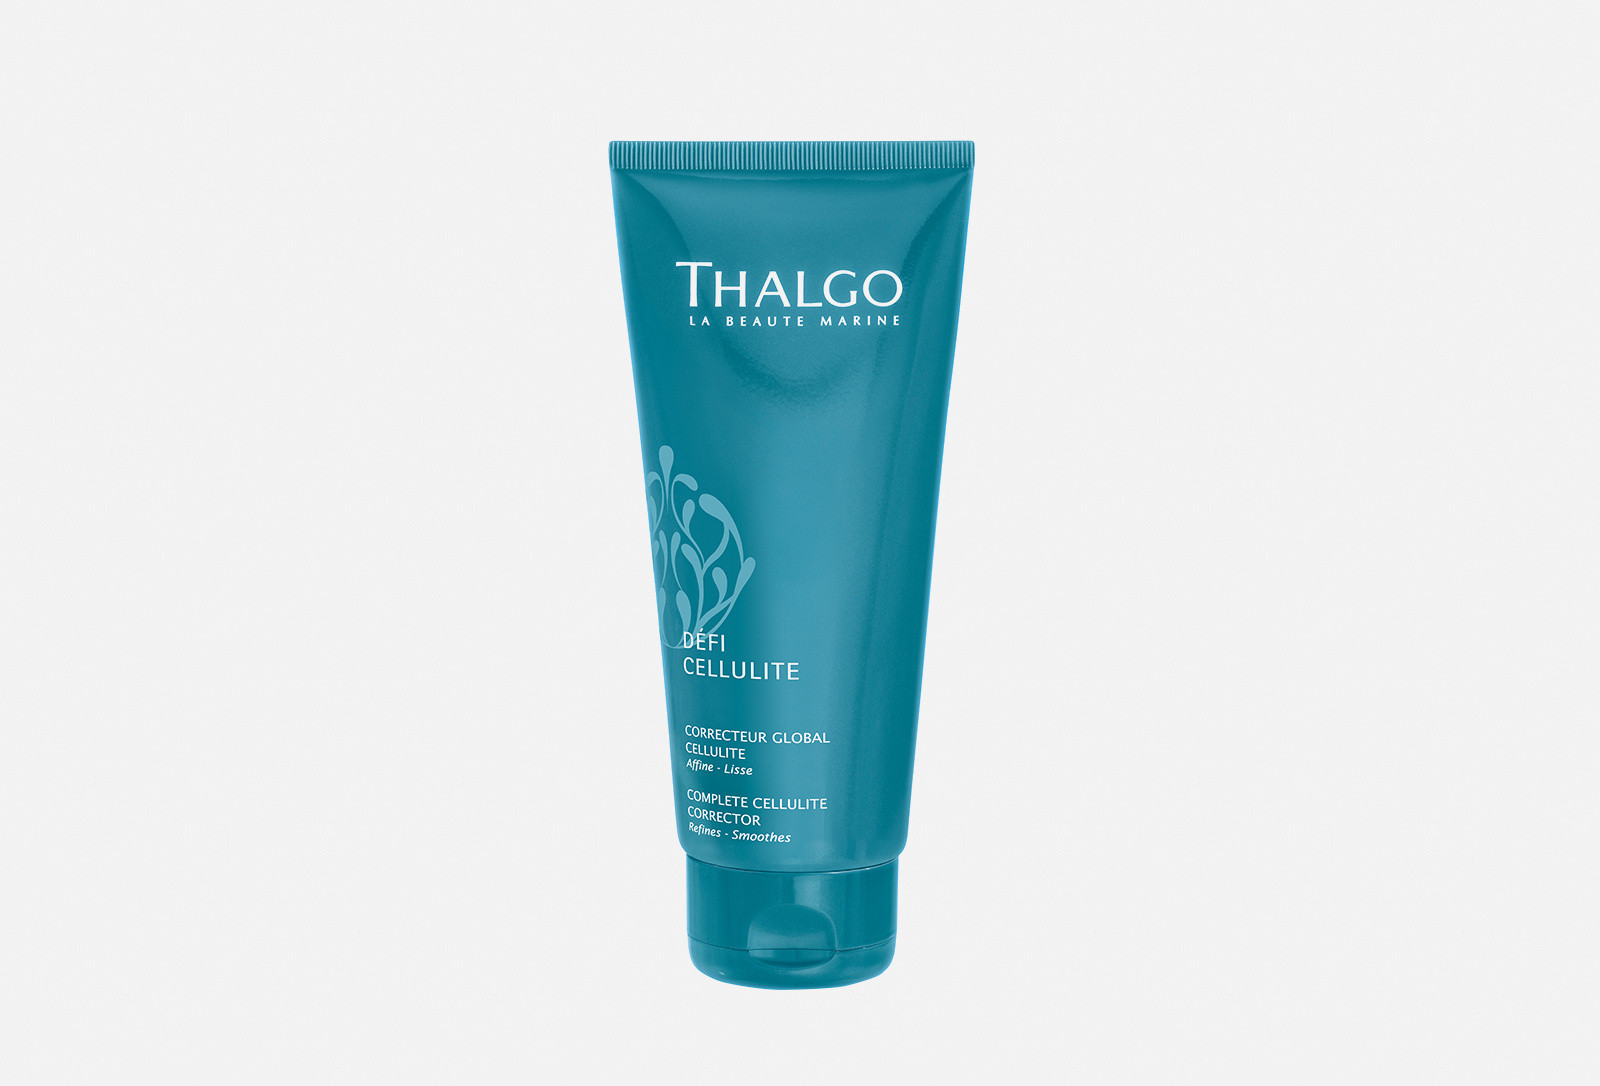 Корректирующий крем против всех видов целлюлита Thalgo Defi Cellulite Complete Cellulite Corrector